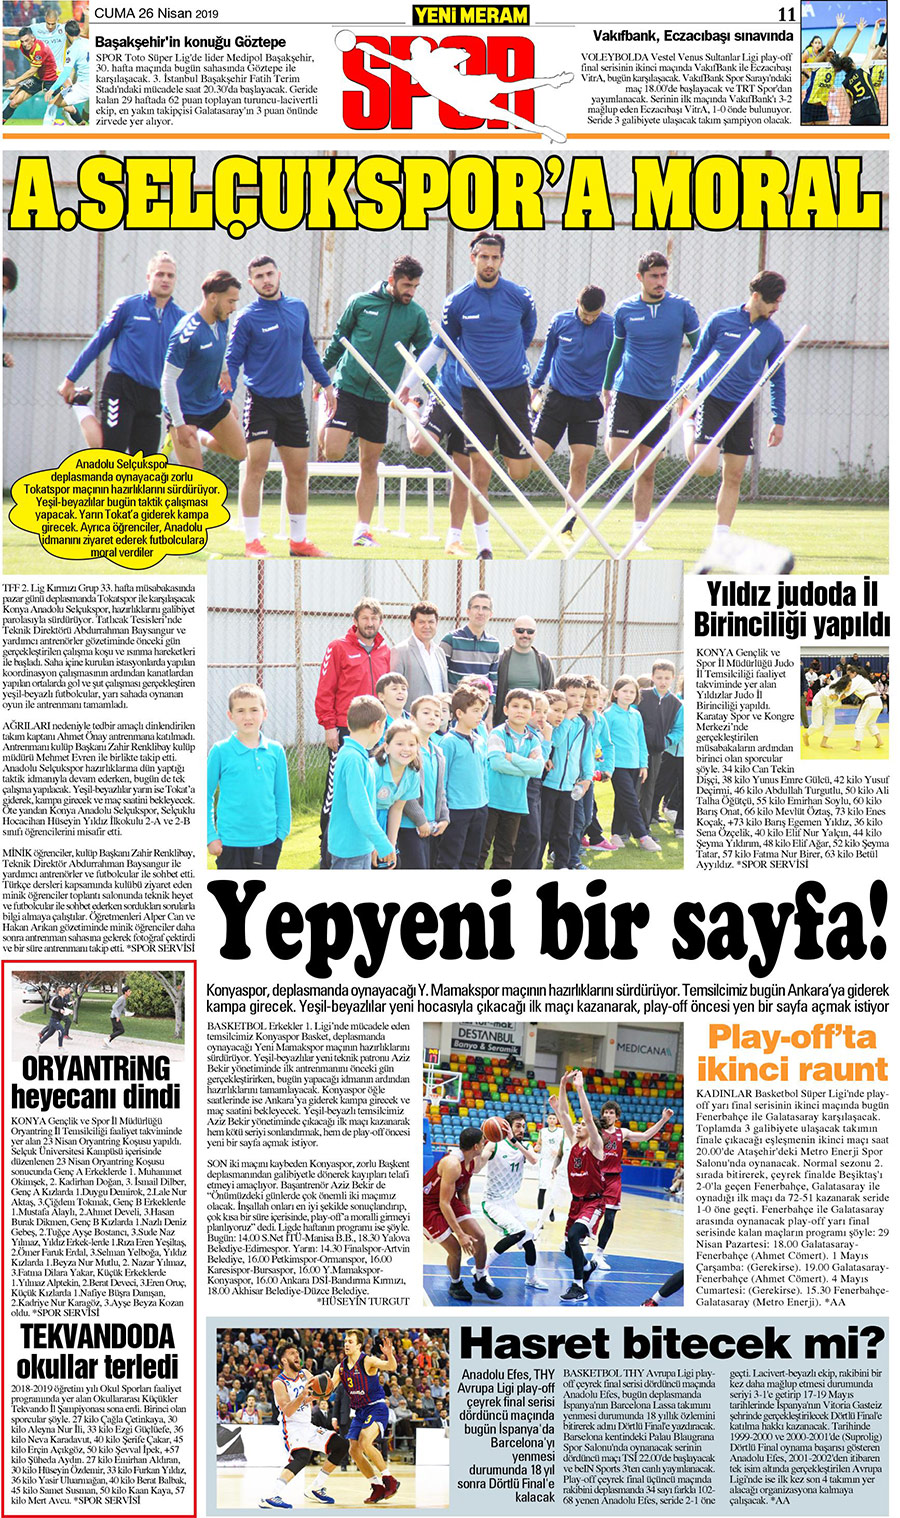 26 Nisan 2019 Yeni Meram Gazetesi